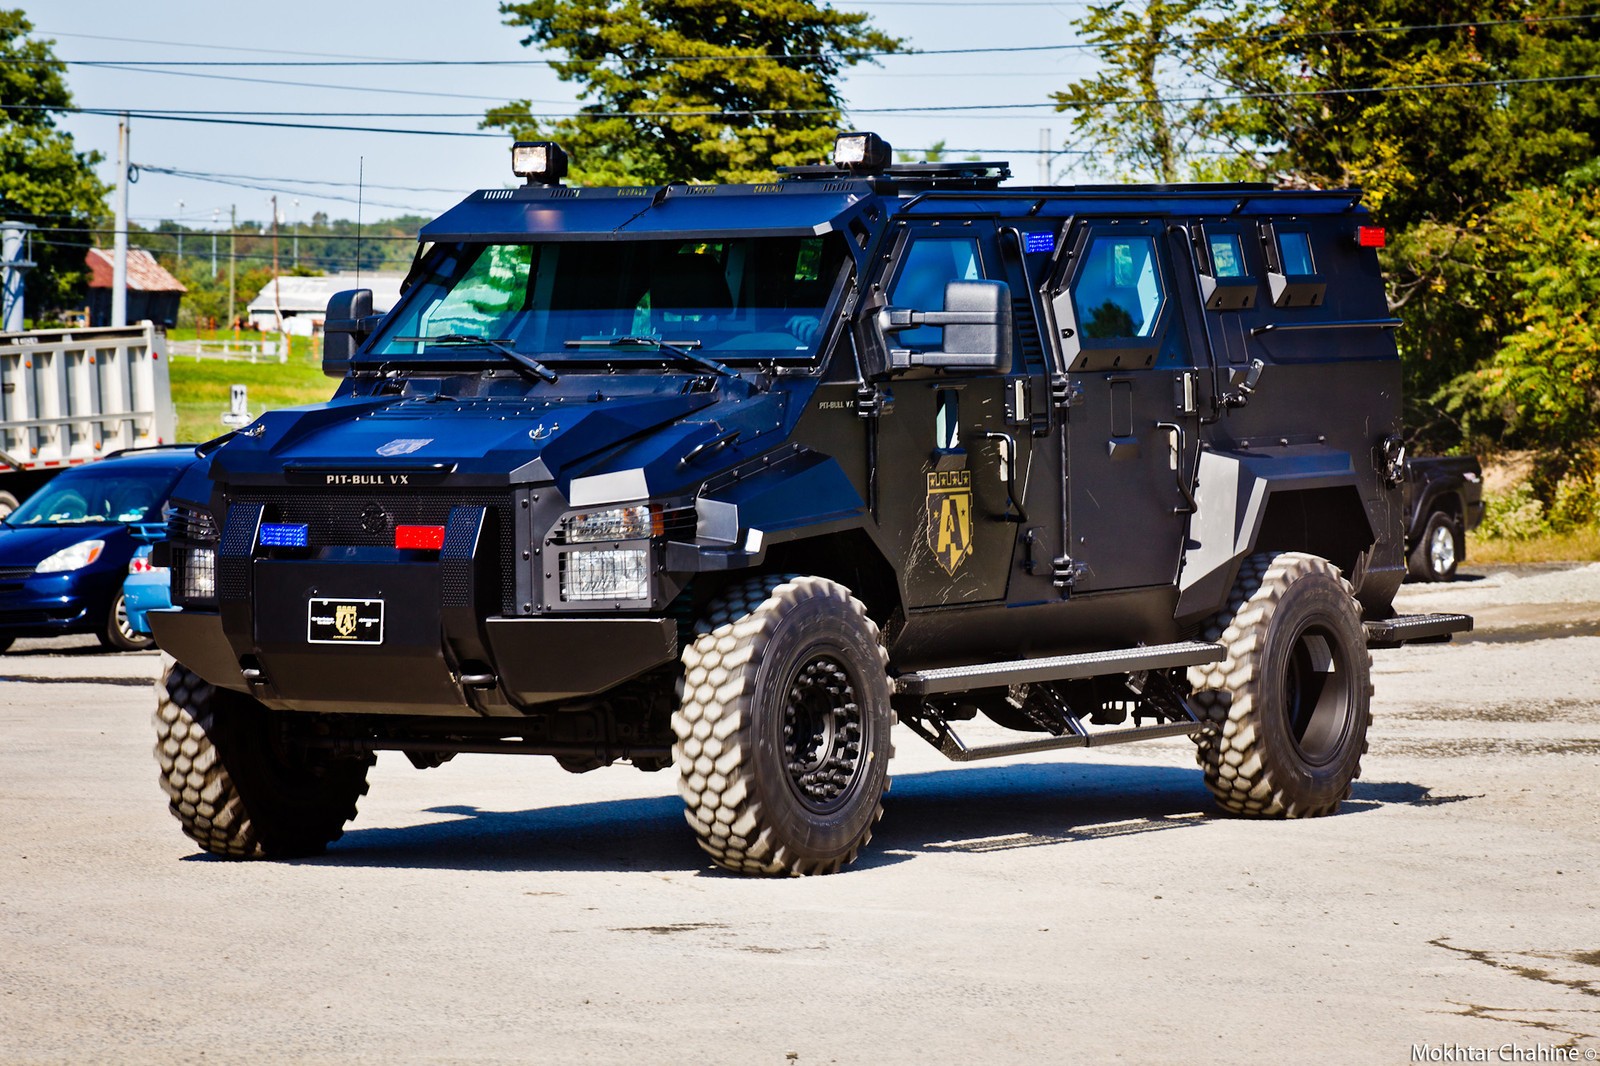 pit-bull-vx-swat-truck-17jpg.jpg